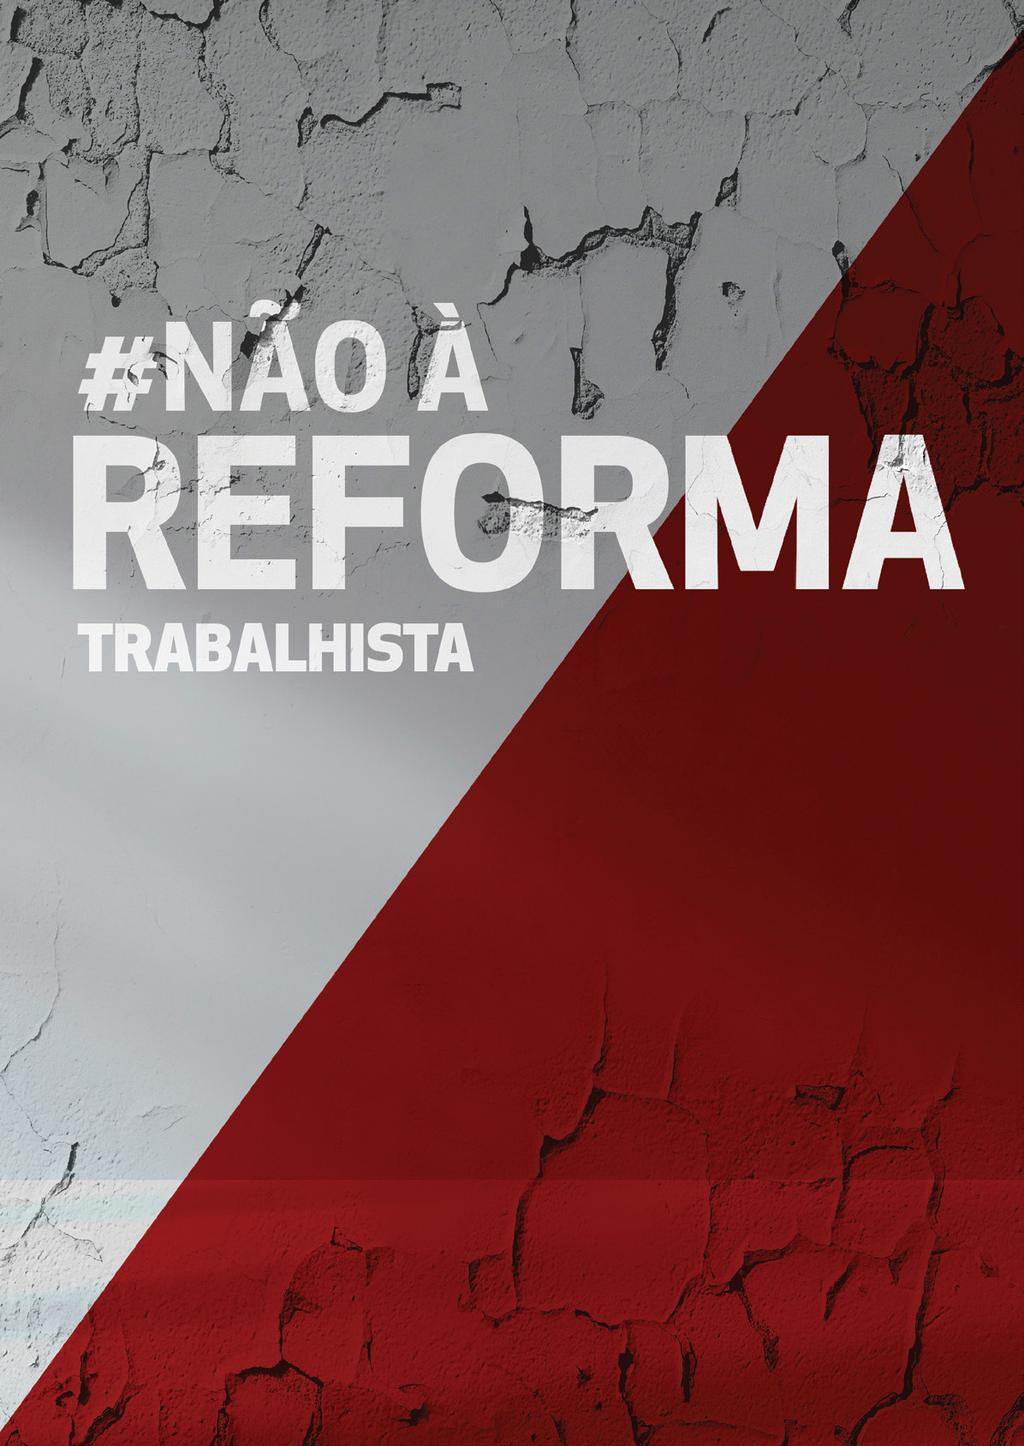 RESUMO DA REFORMA O Plenário da Câmara dos Deputados aprovou, em 27 de abril, substitutivo do deputado Rogério Marinho (PSDB) ao Projeto de Lei nº 6.